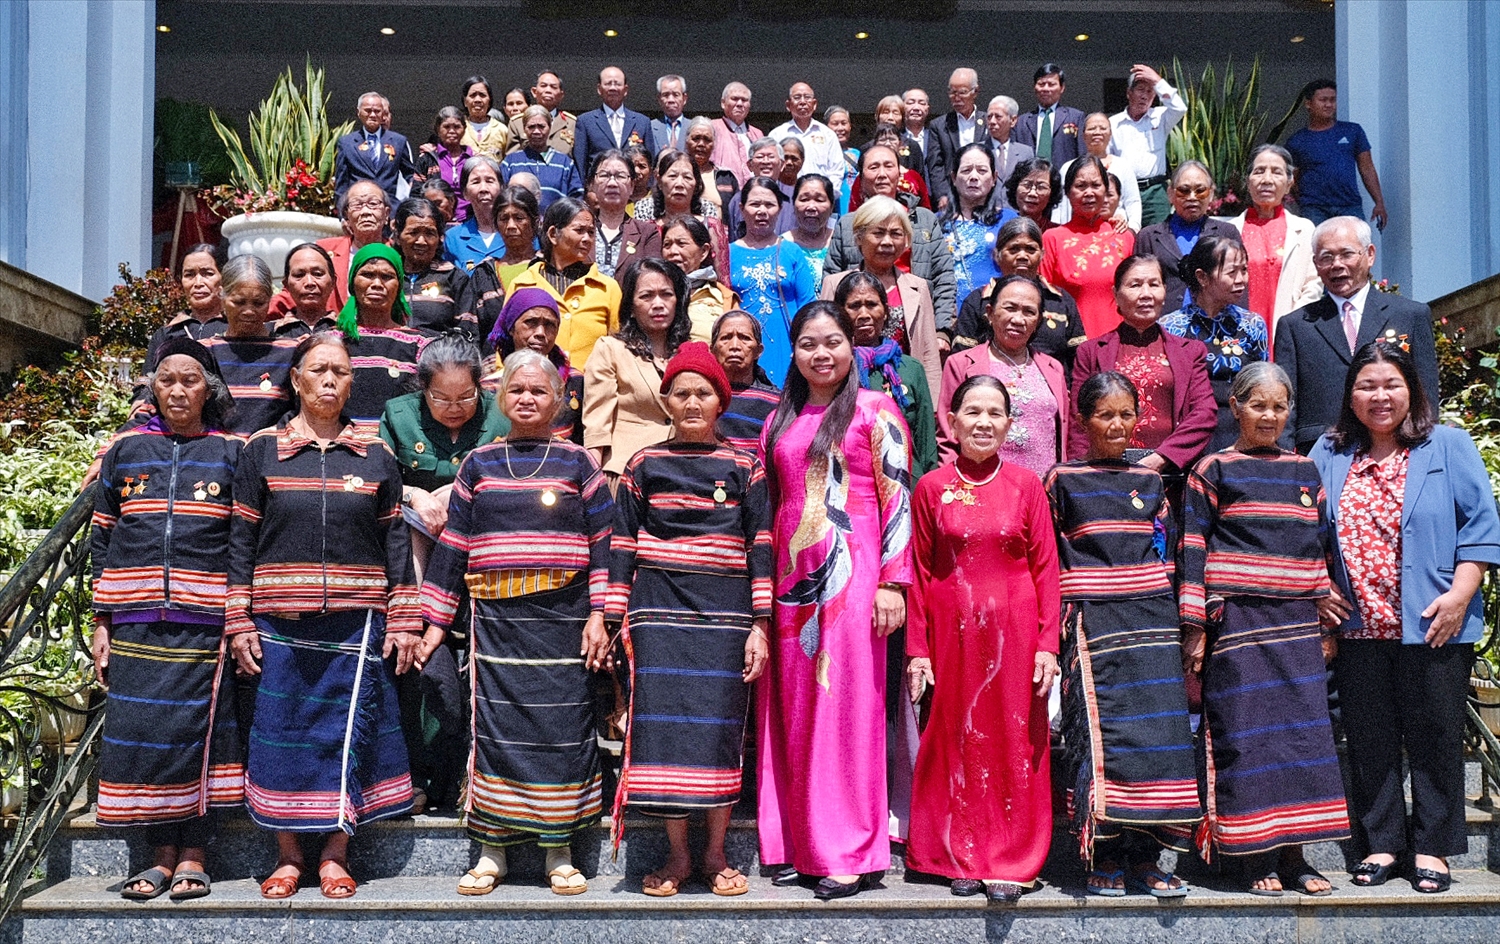 81 nữ cựu tù chính trị yêu nước tiêu biểu tỉnh Gia Lai tham dự họp mặt tại Tp. Pleiku